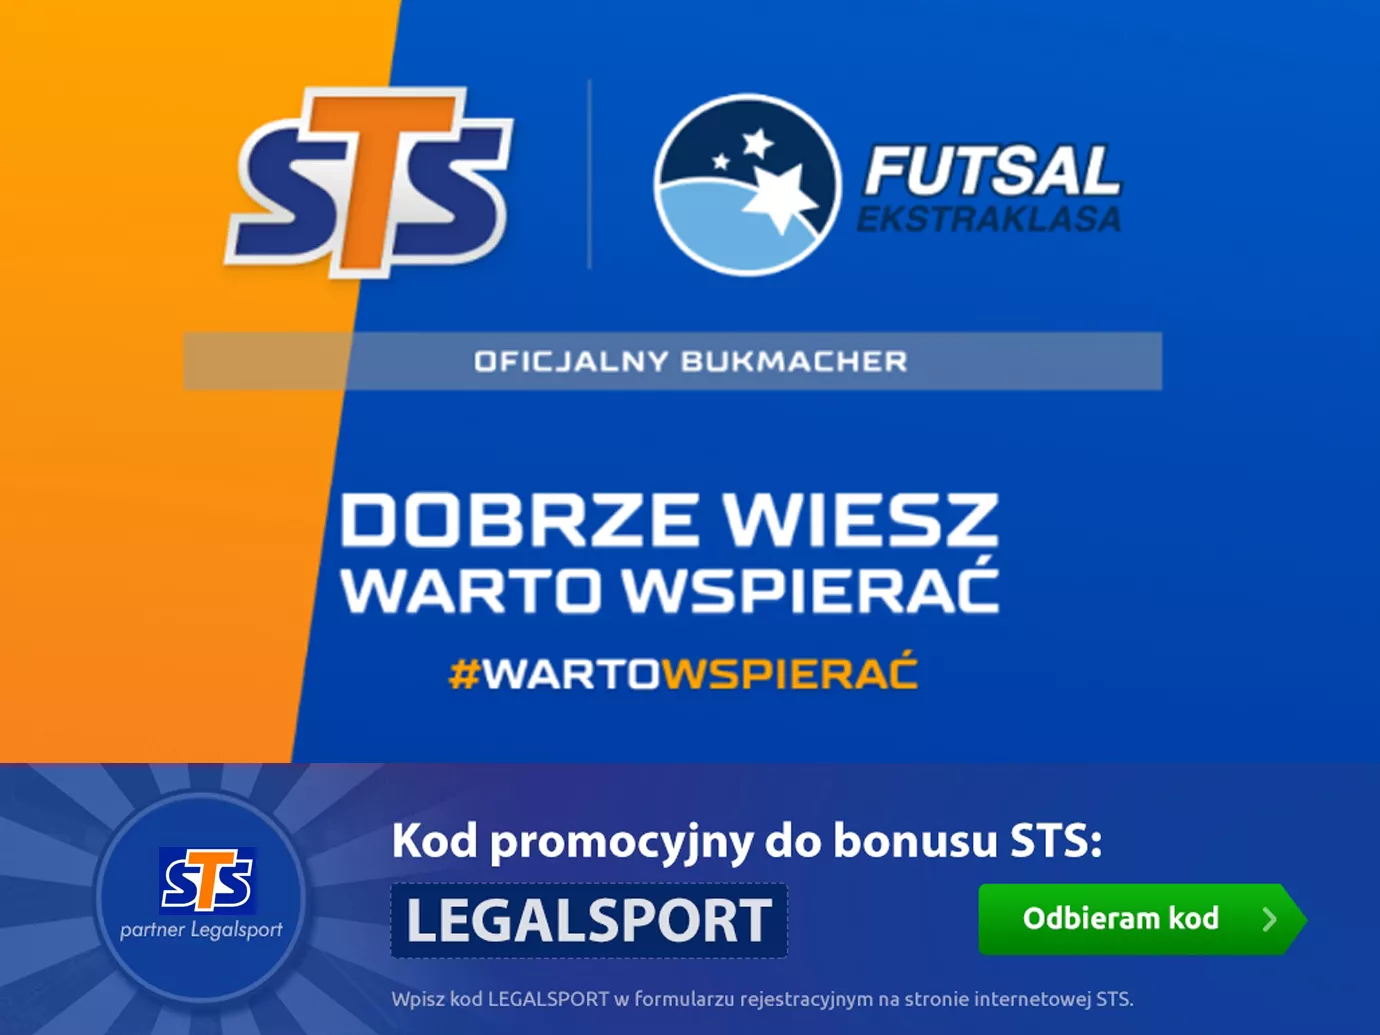 STS wspiera finansowo Futsal Ekstraklasę